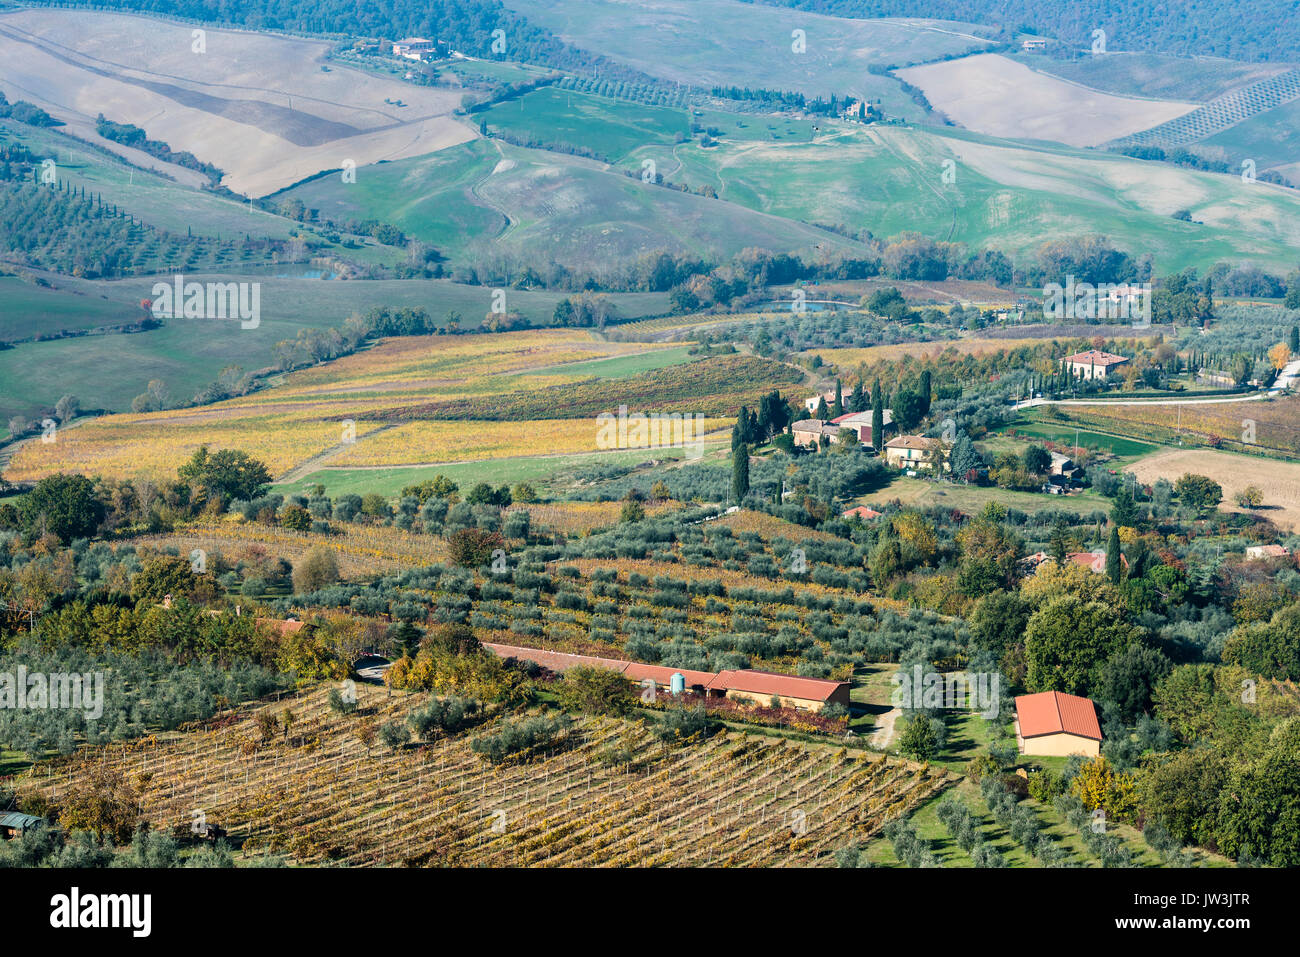 Un paysage typique de la Toscane à proximité de la ville de Montepulciano avec de vastes champs de vignes multicolores, des rangées d'oliviers, des bâtiments et des ruelles de cyprès Banque D'Images